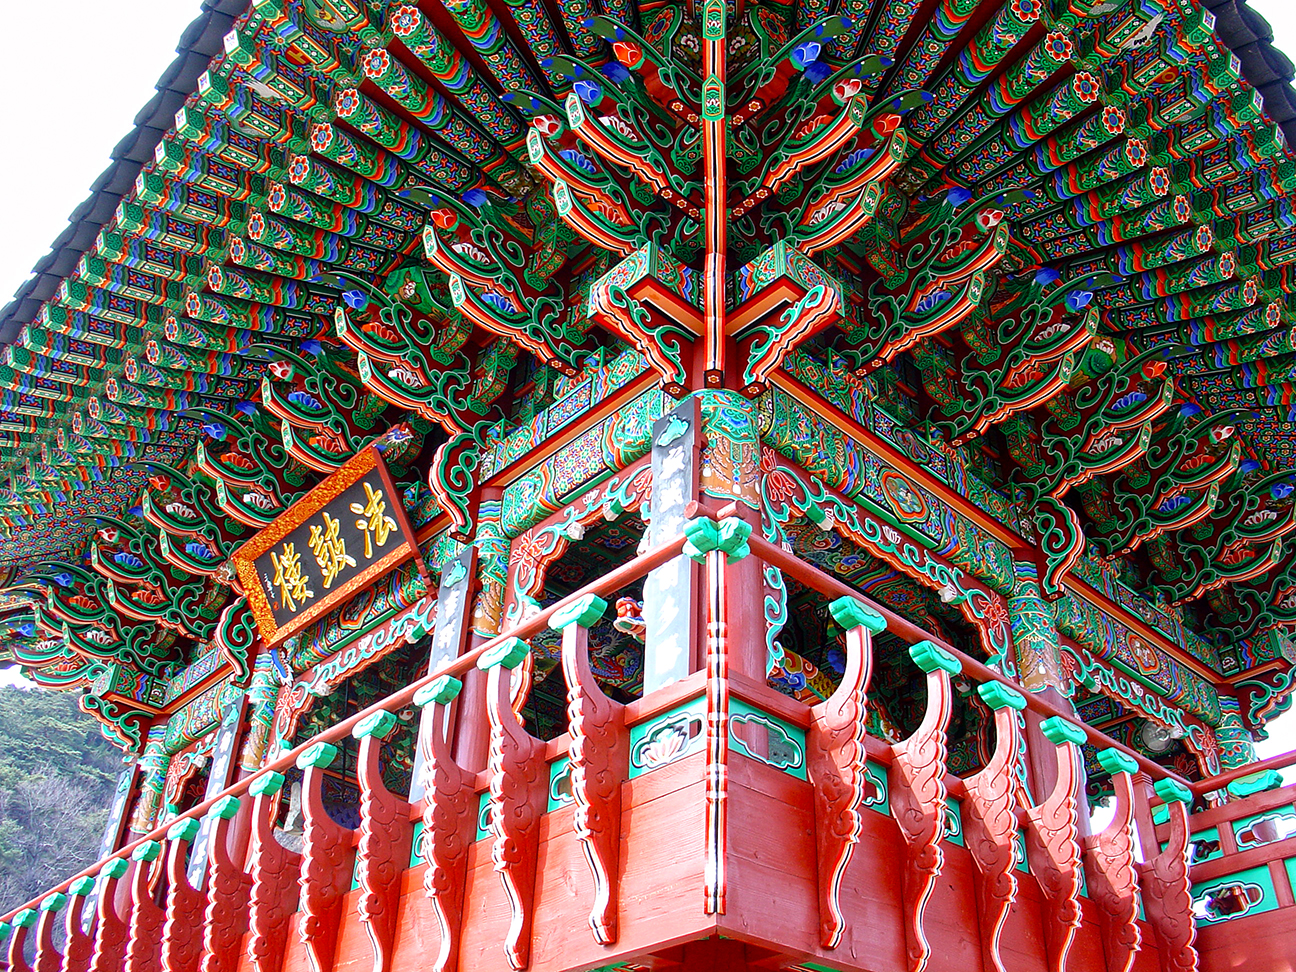 Huaeom Temple (화엄사) I